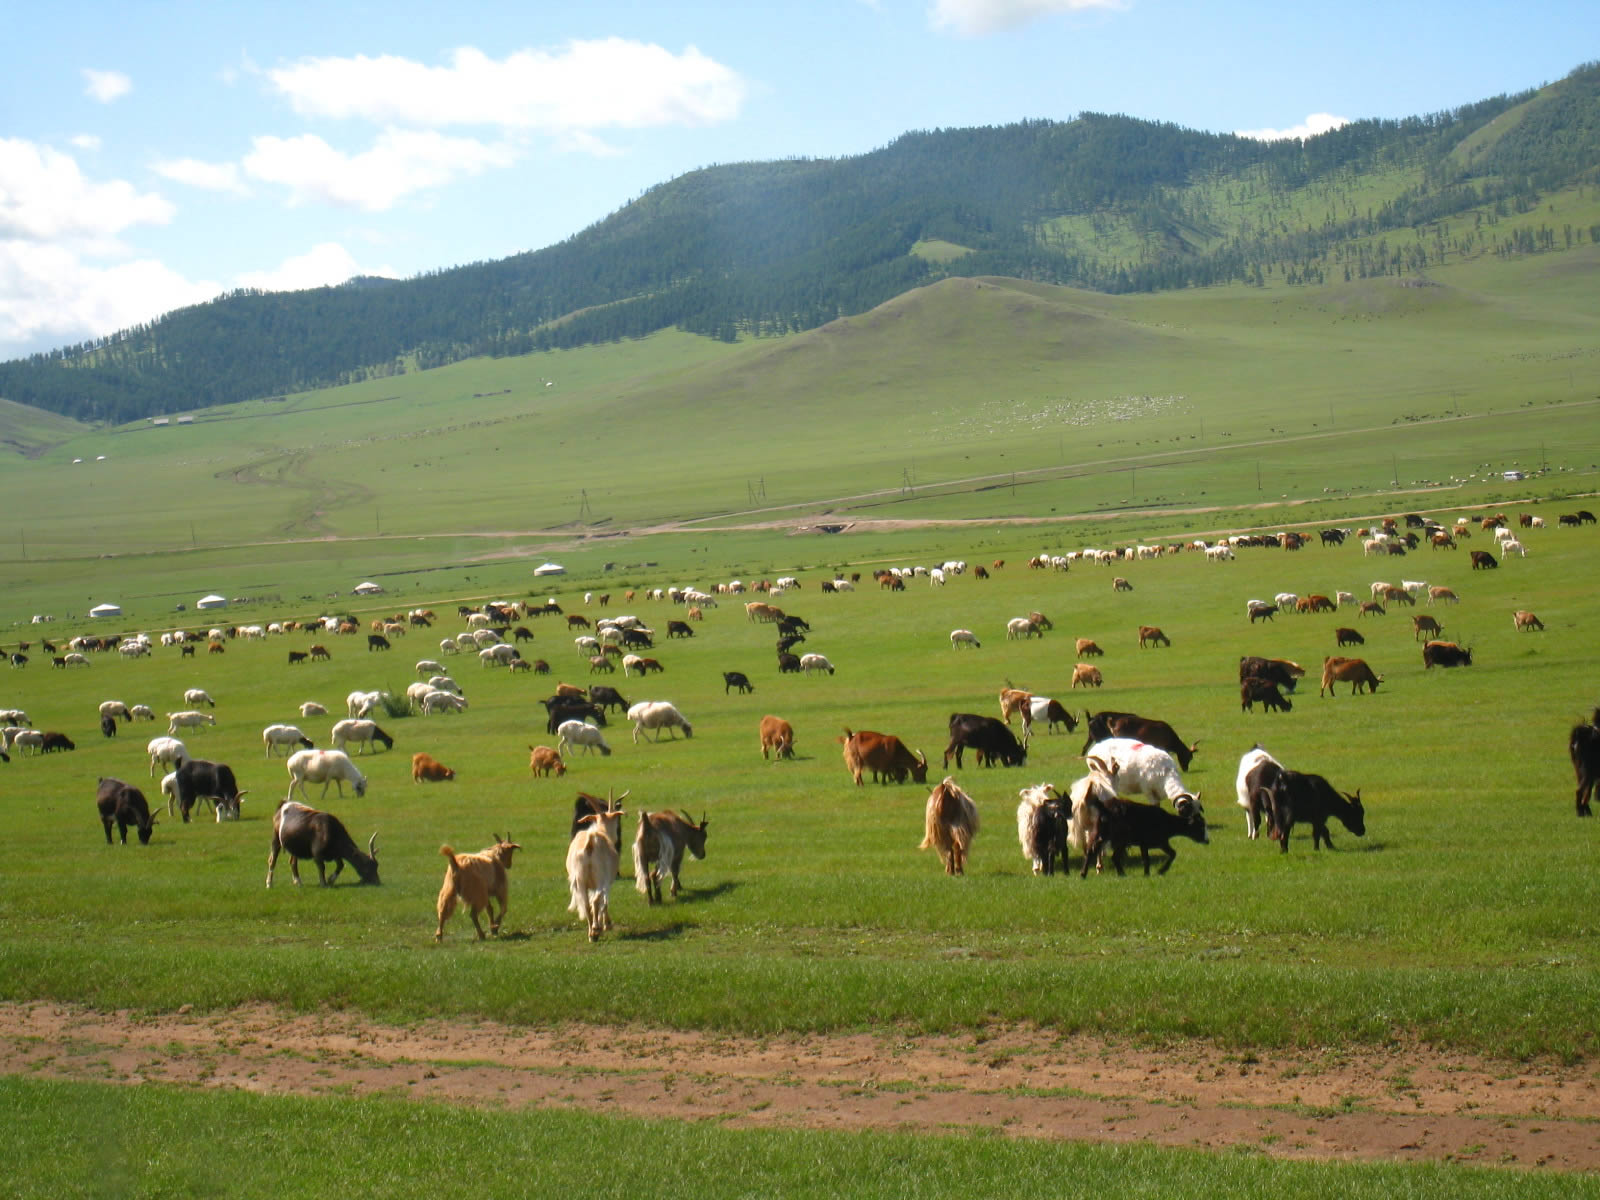 mongolia 3 million people 40 million animals